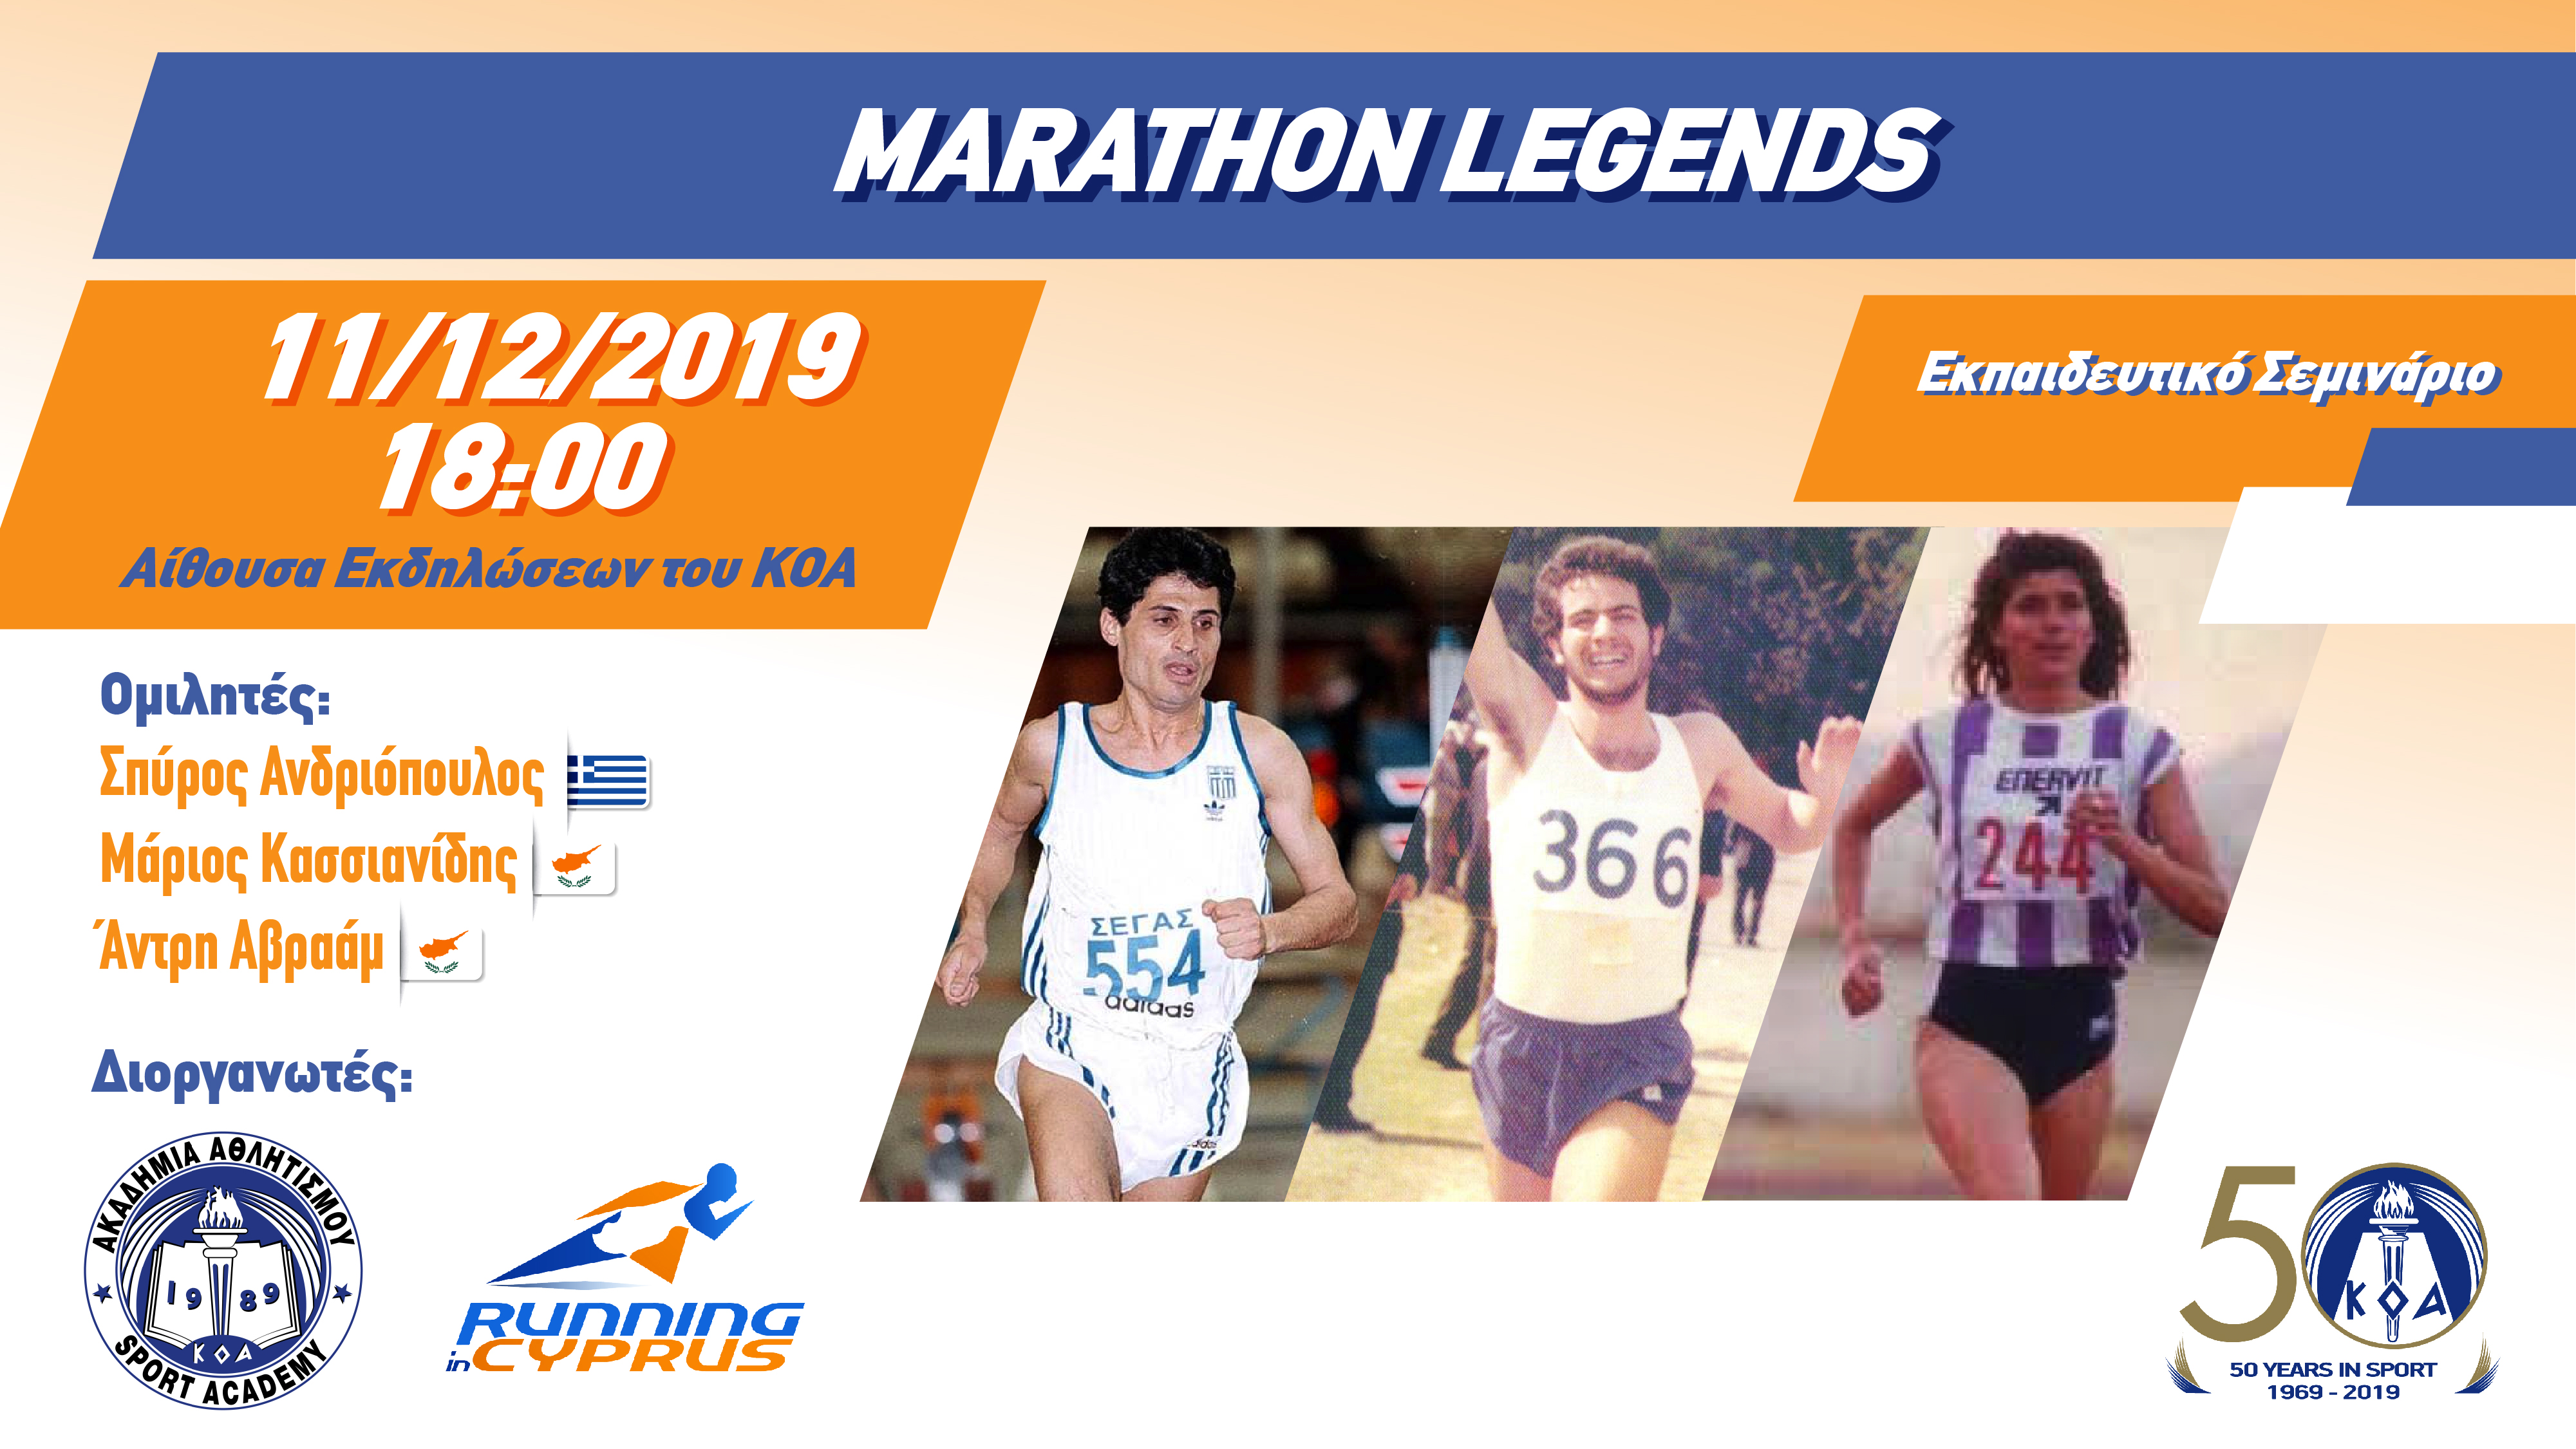 Έντονο ενδιαφέρον για το ενημερωτικό Σεμινάριο με θέμα «Marathon Legends»